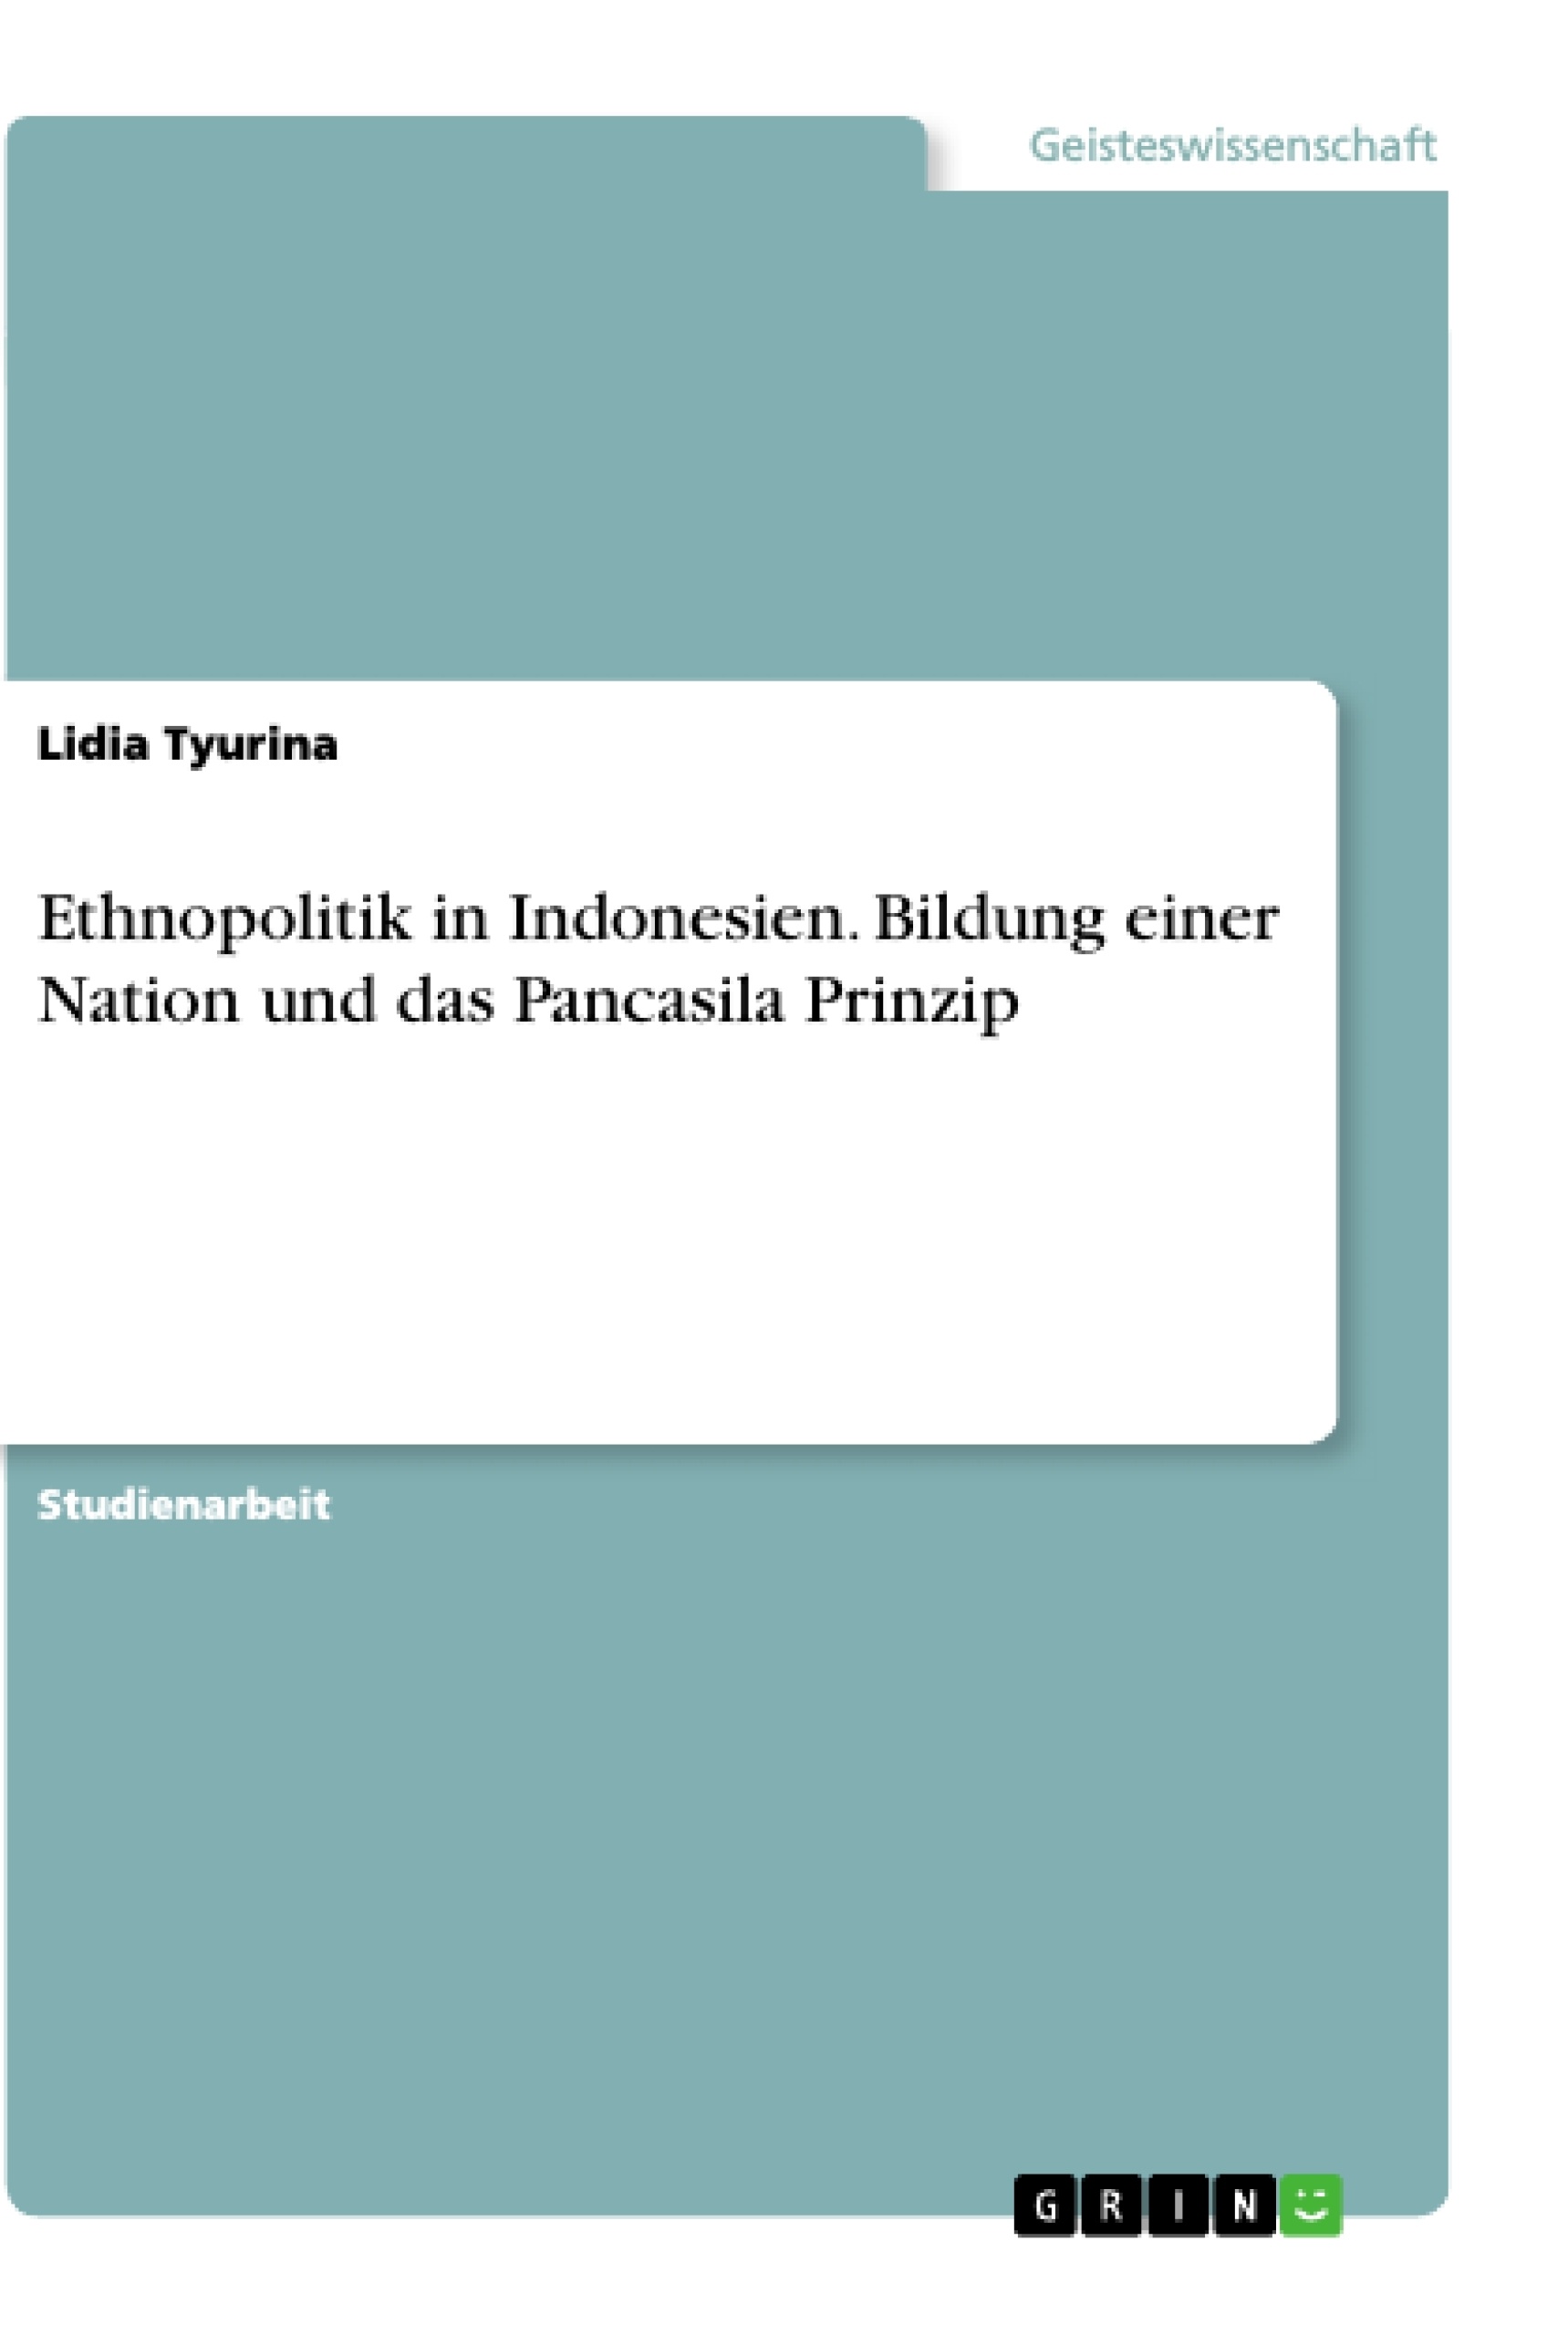 Title: Ethnopolitik in Indonesien. Bildung einer Nation und das Pancasila Prinzip